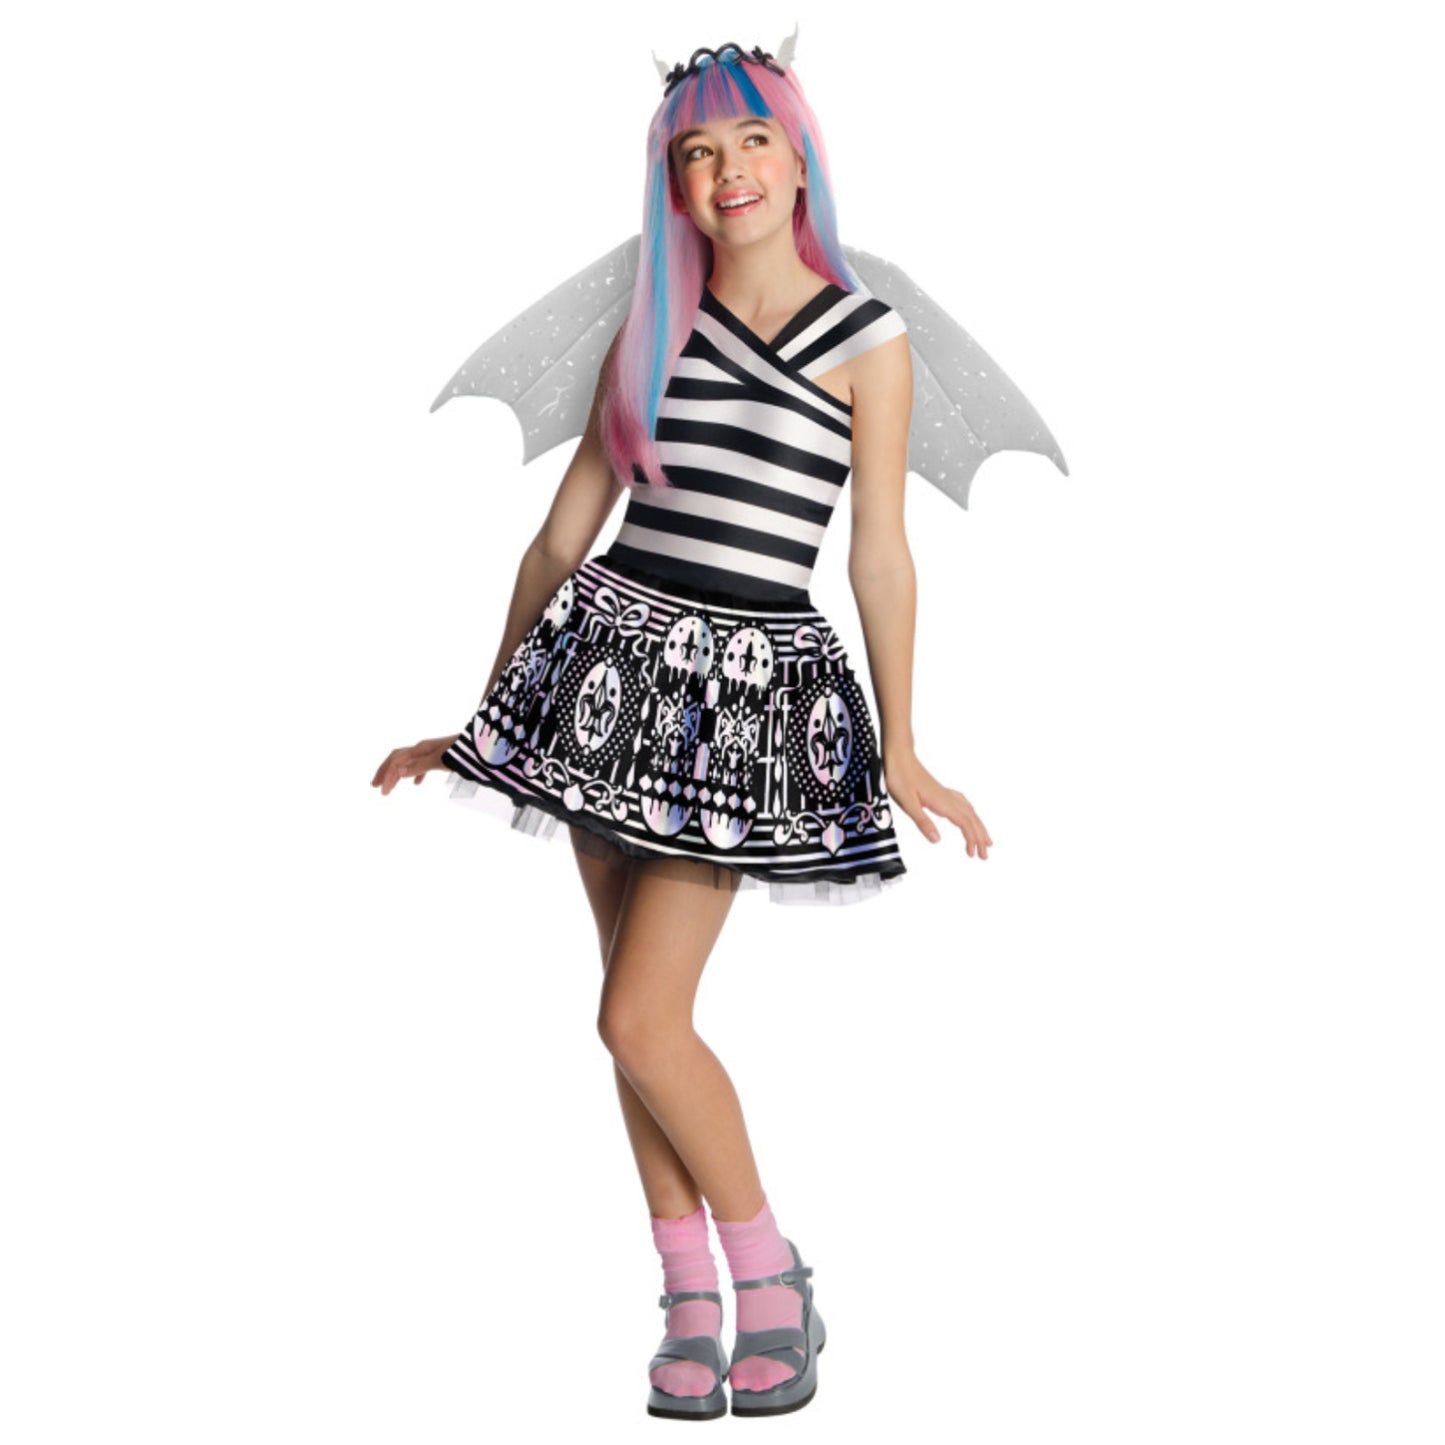 Monster High Rochelle Goyle Costume